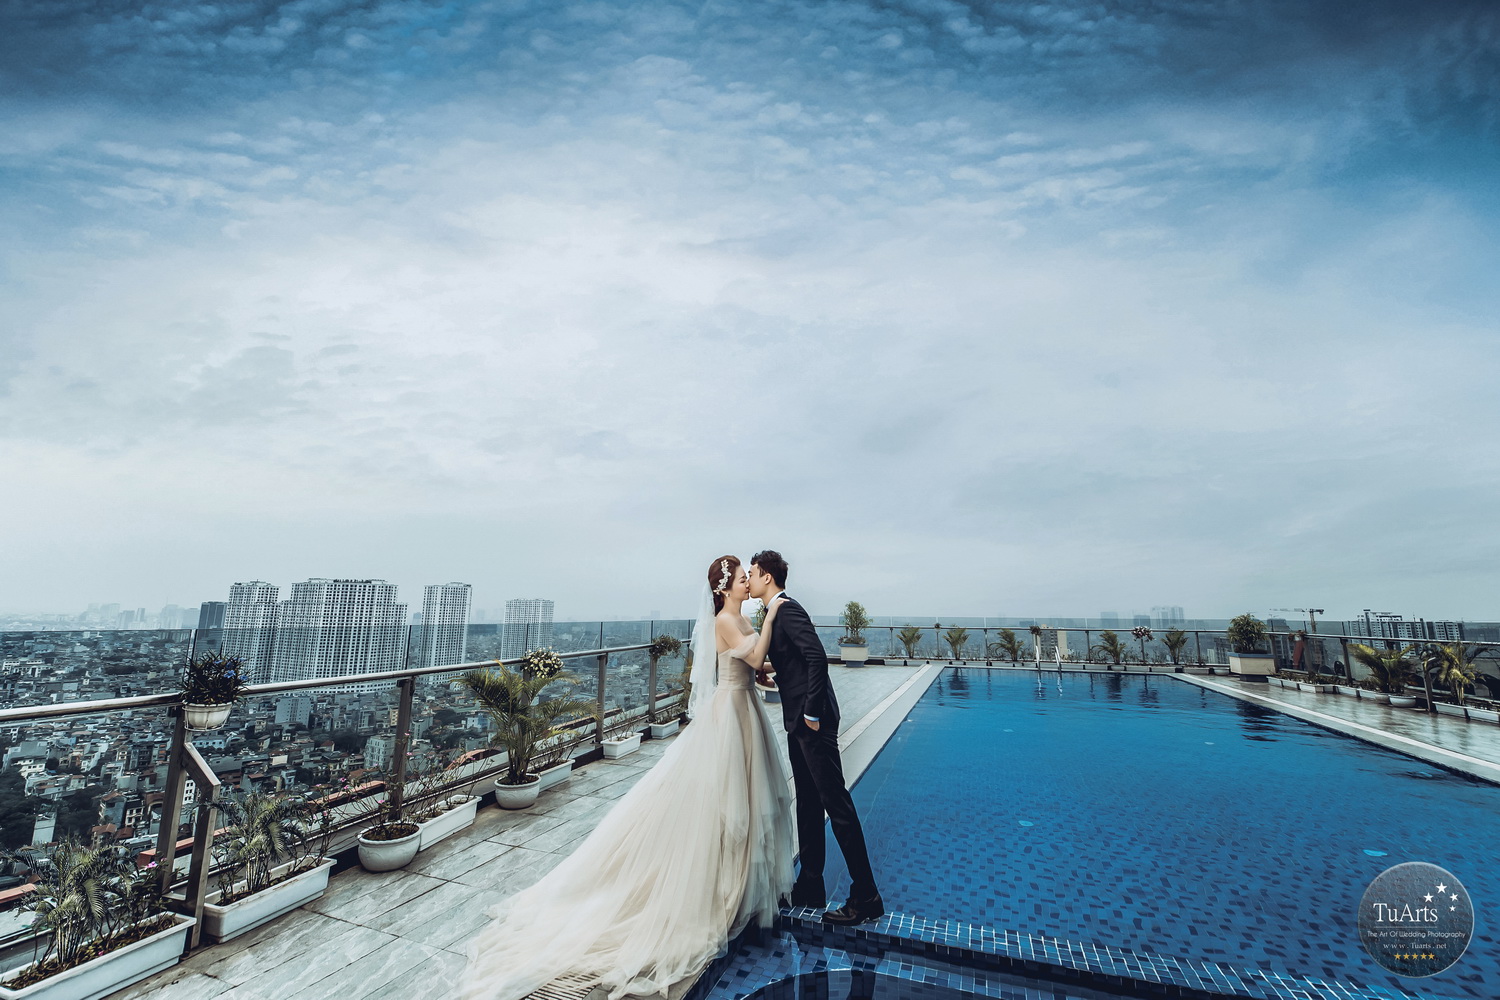 Địa điểm chụp ảĐịa điểm chụp ảnh cưới đẹp tại Hà Nội 